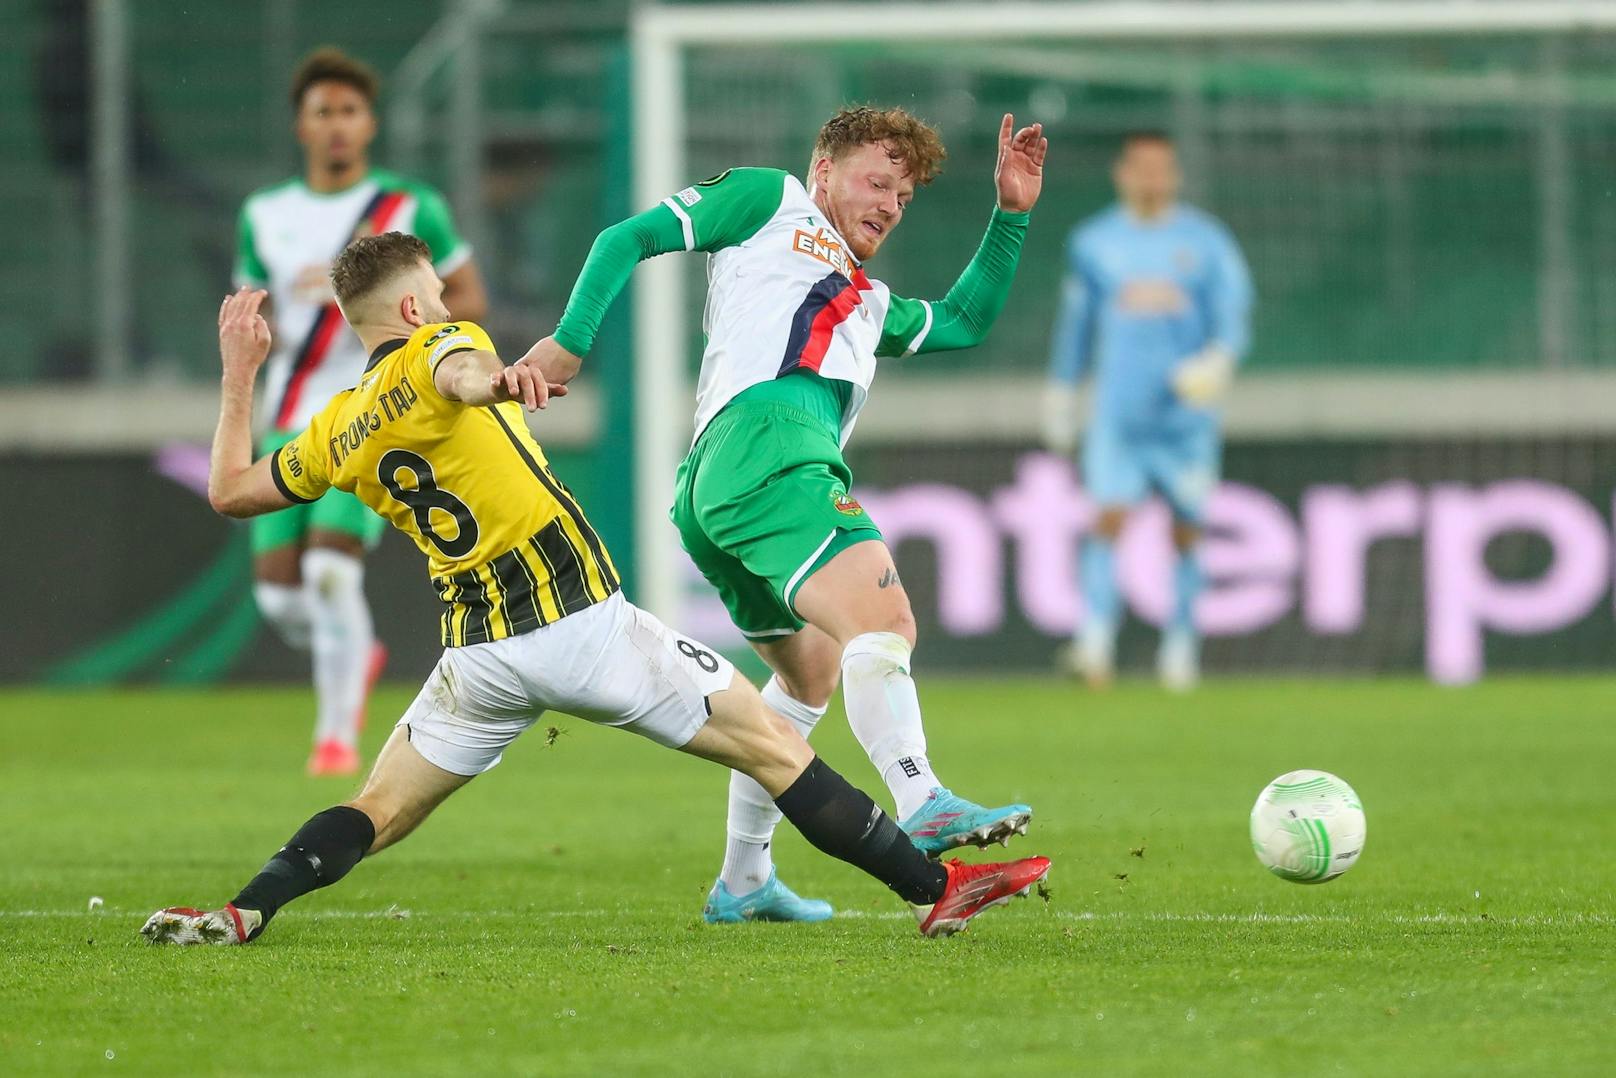 Große Erleichterung dann im Conference-League-Sechzehntelfinale! Rapid gewann das Hinspiel gegen Vitesse Arnheim mit 2:1. Druijf erzielte sein erstes Tor.